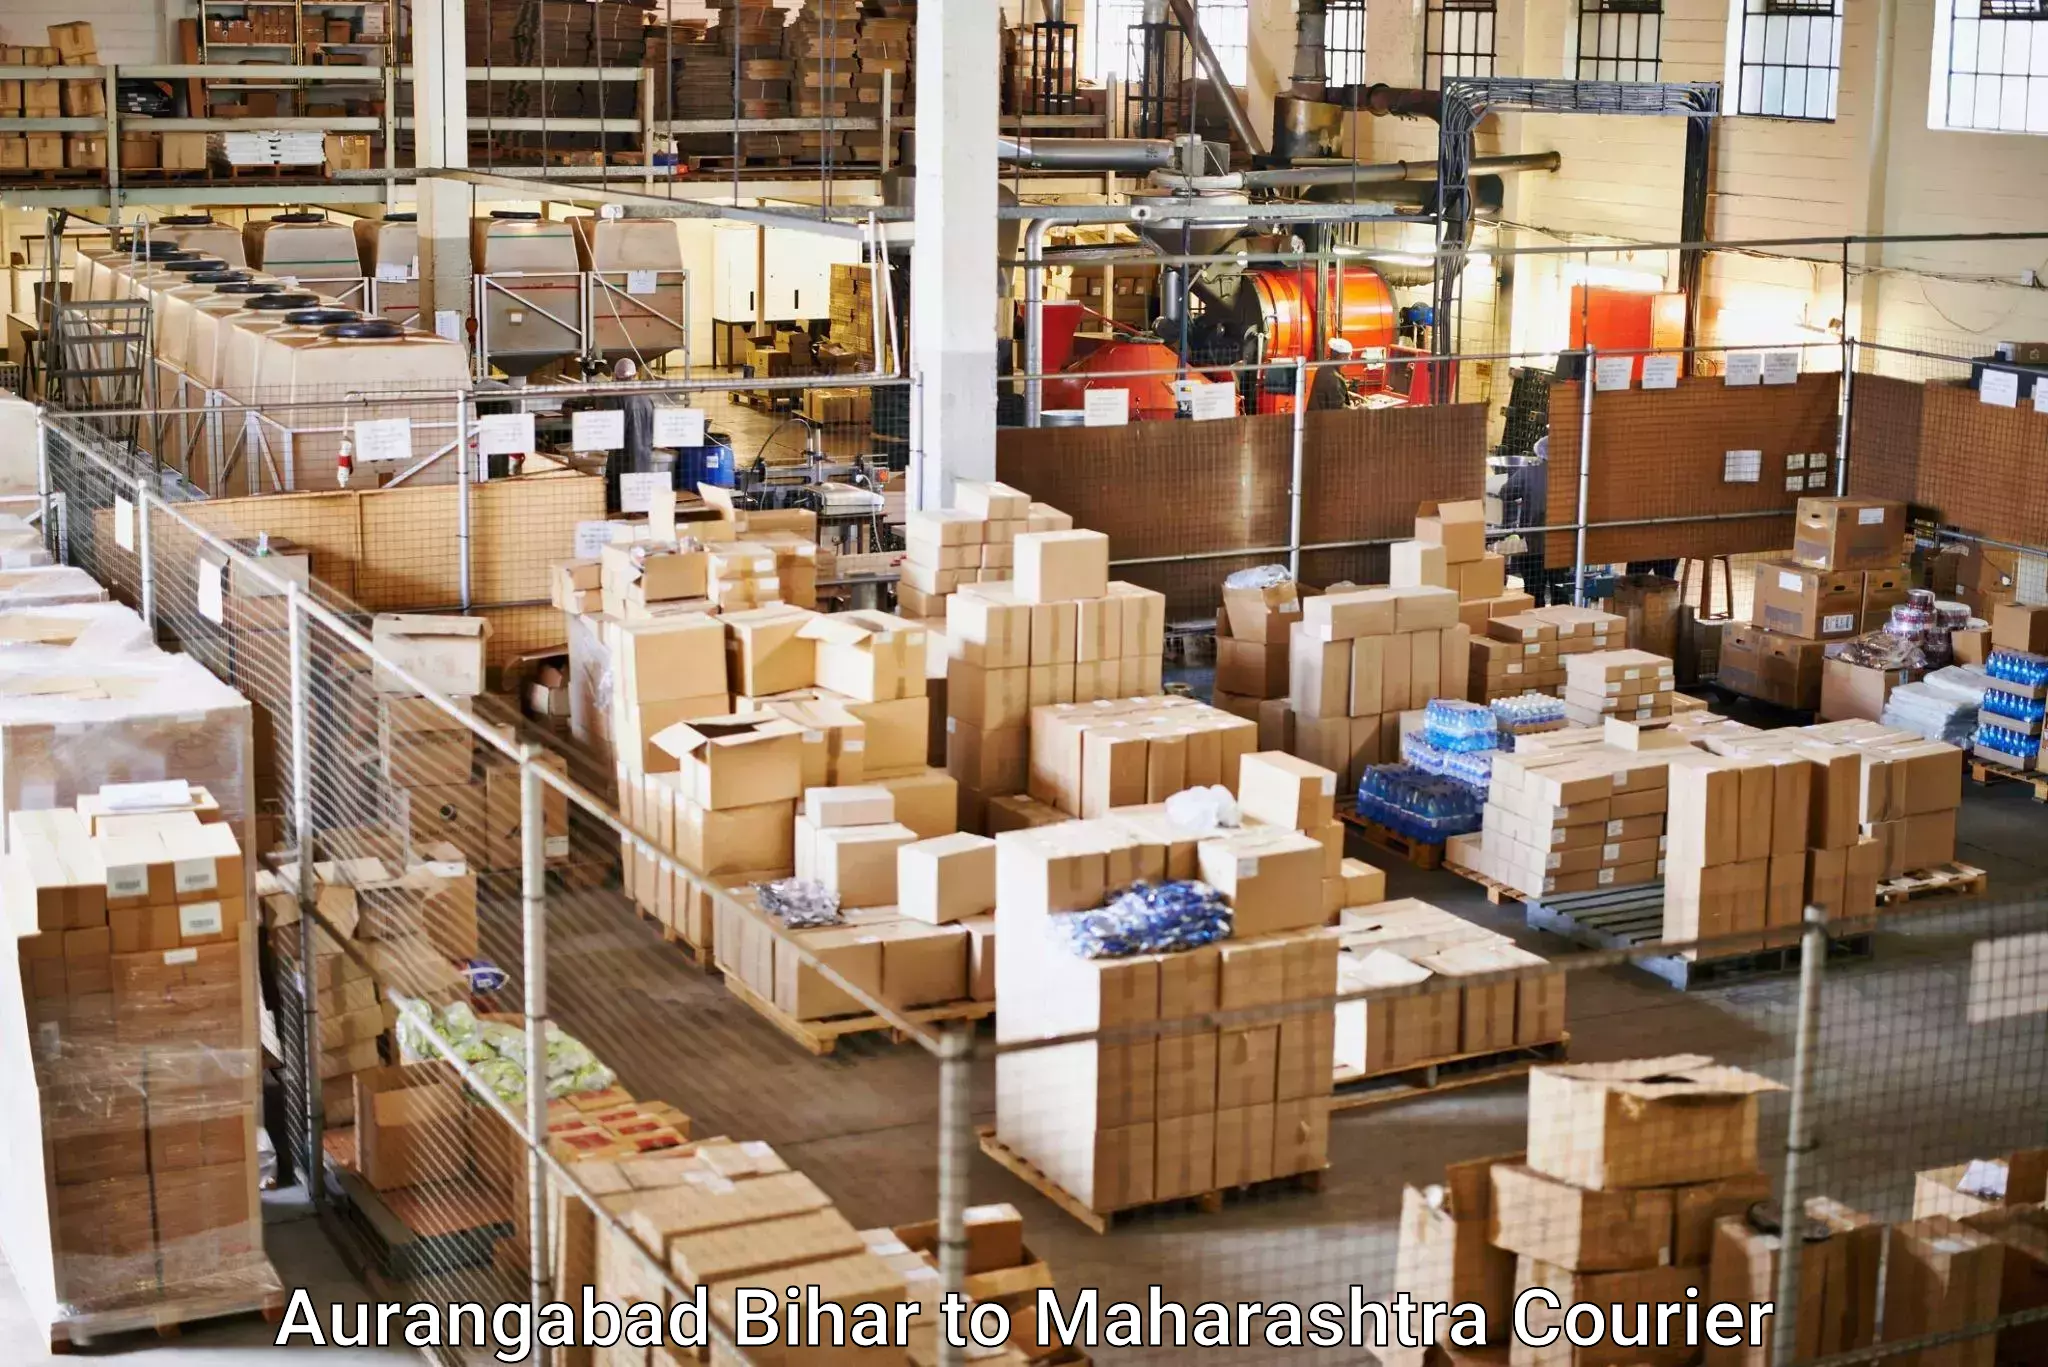 Cost-effective courier solutions Aurangabad Bihar to Buldhana